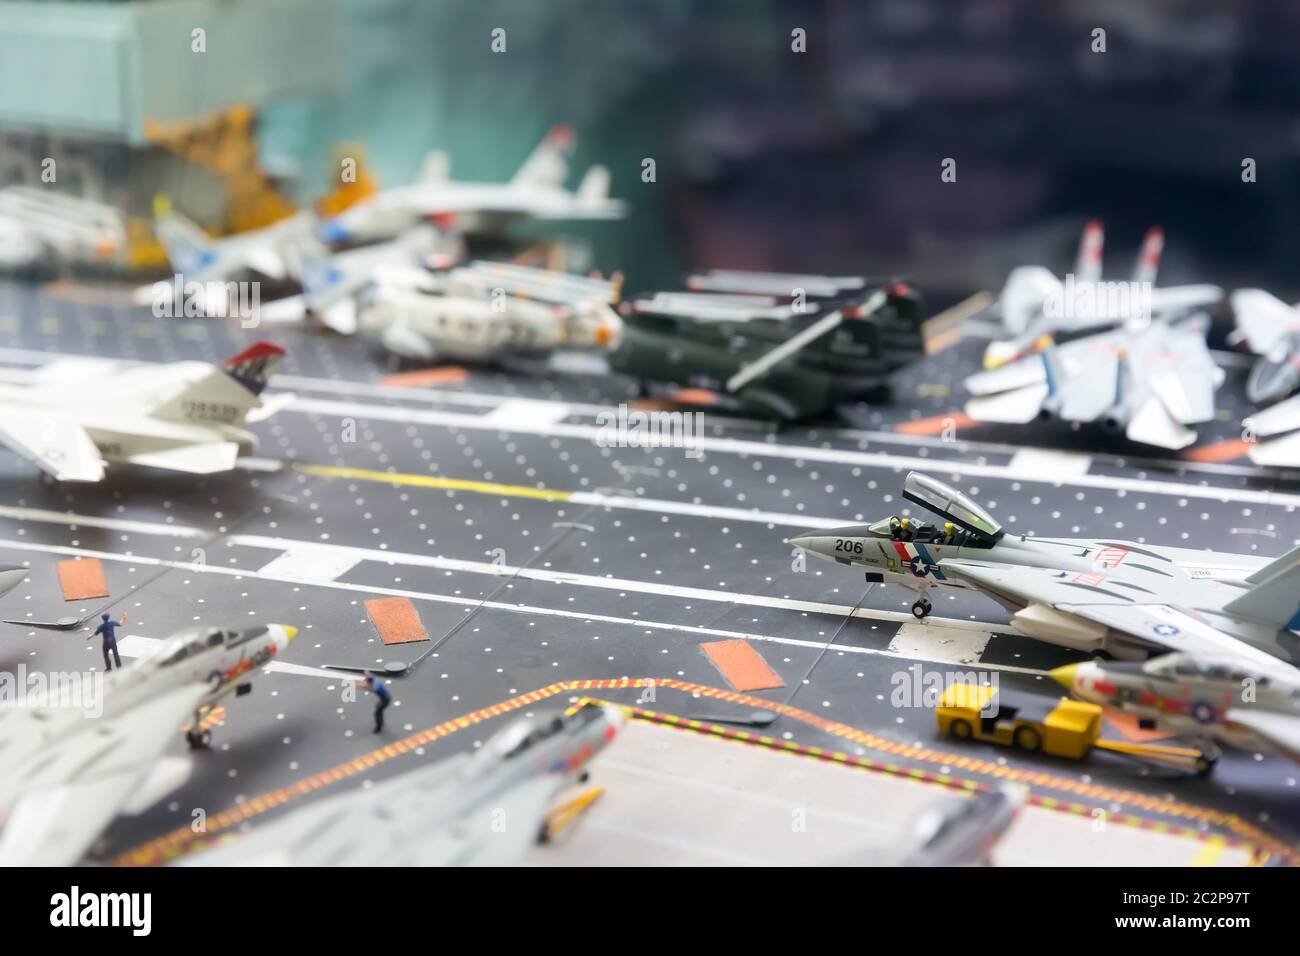 Modello in miniatura di pista portaerei con aerei e personaggi. Foto Stock